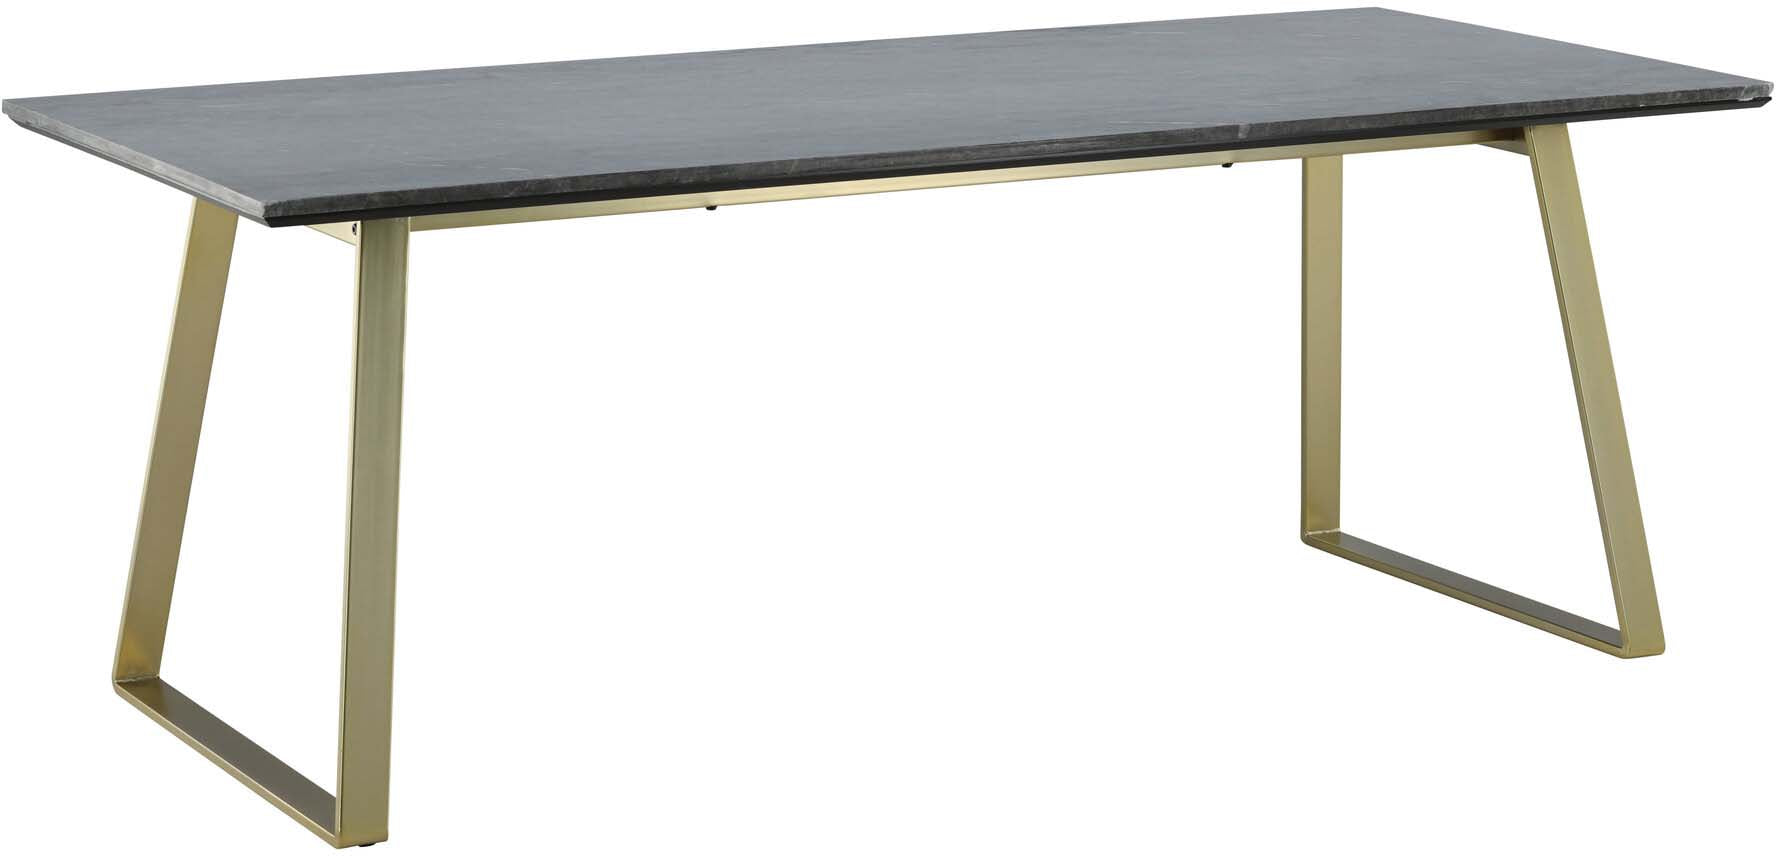 Estelle Tisch in Grau / Gold präsentiert im Onlineshop von KAQTU Design AG. Esstisch ist von Venture Home